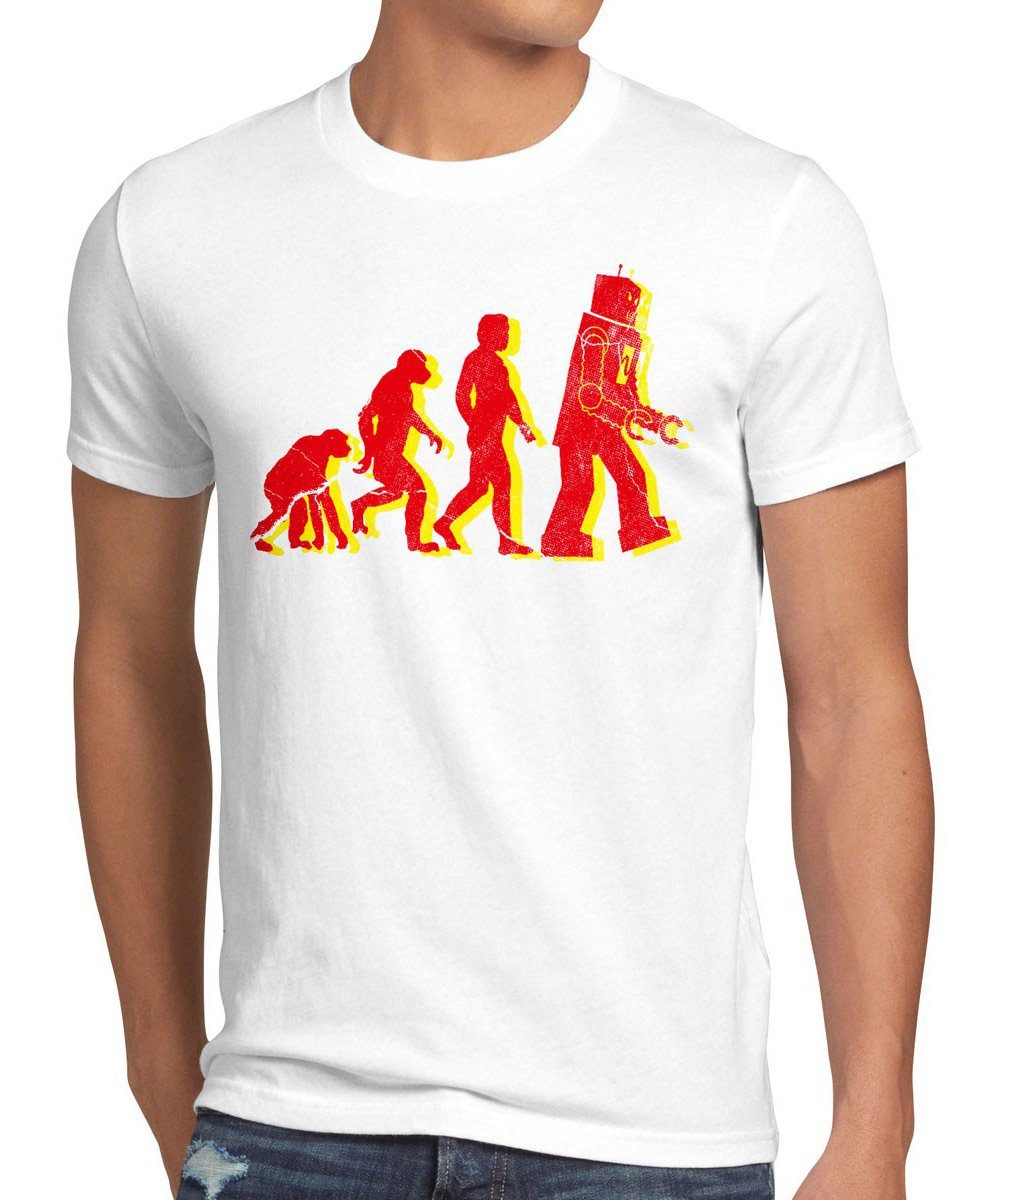 Vollständiges Produktsortiment! style3 Print-Shirt Herren Evolution roboter robot weiß darwin theory bang T-Shirt neu big cooper sheldon